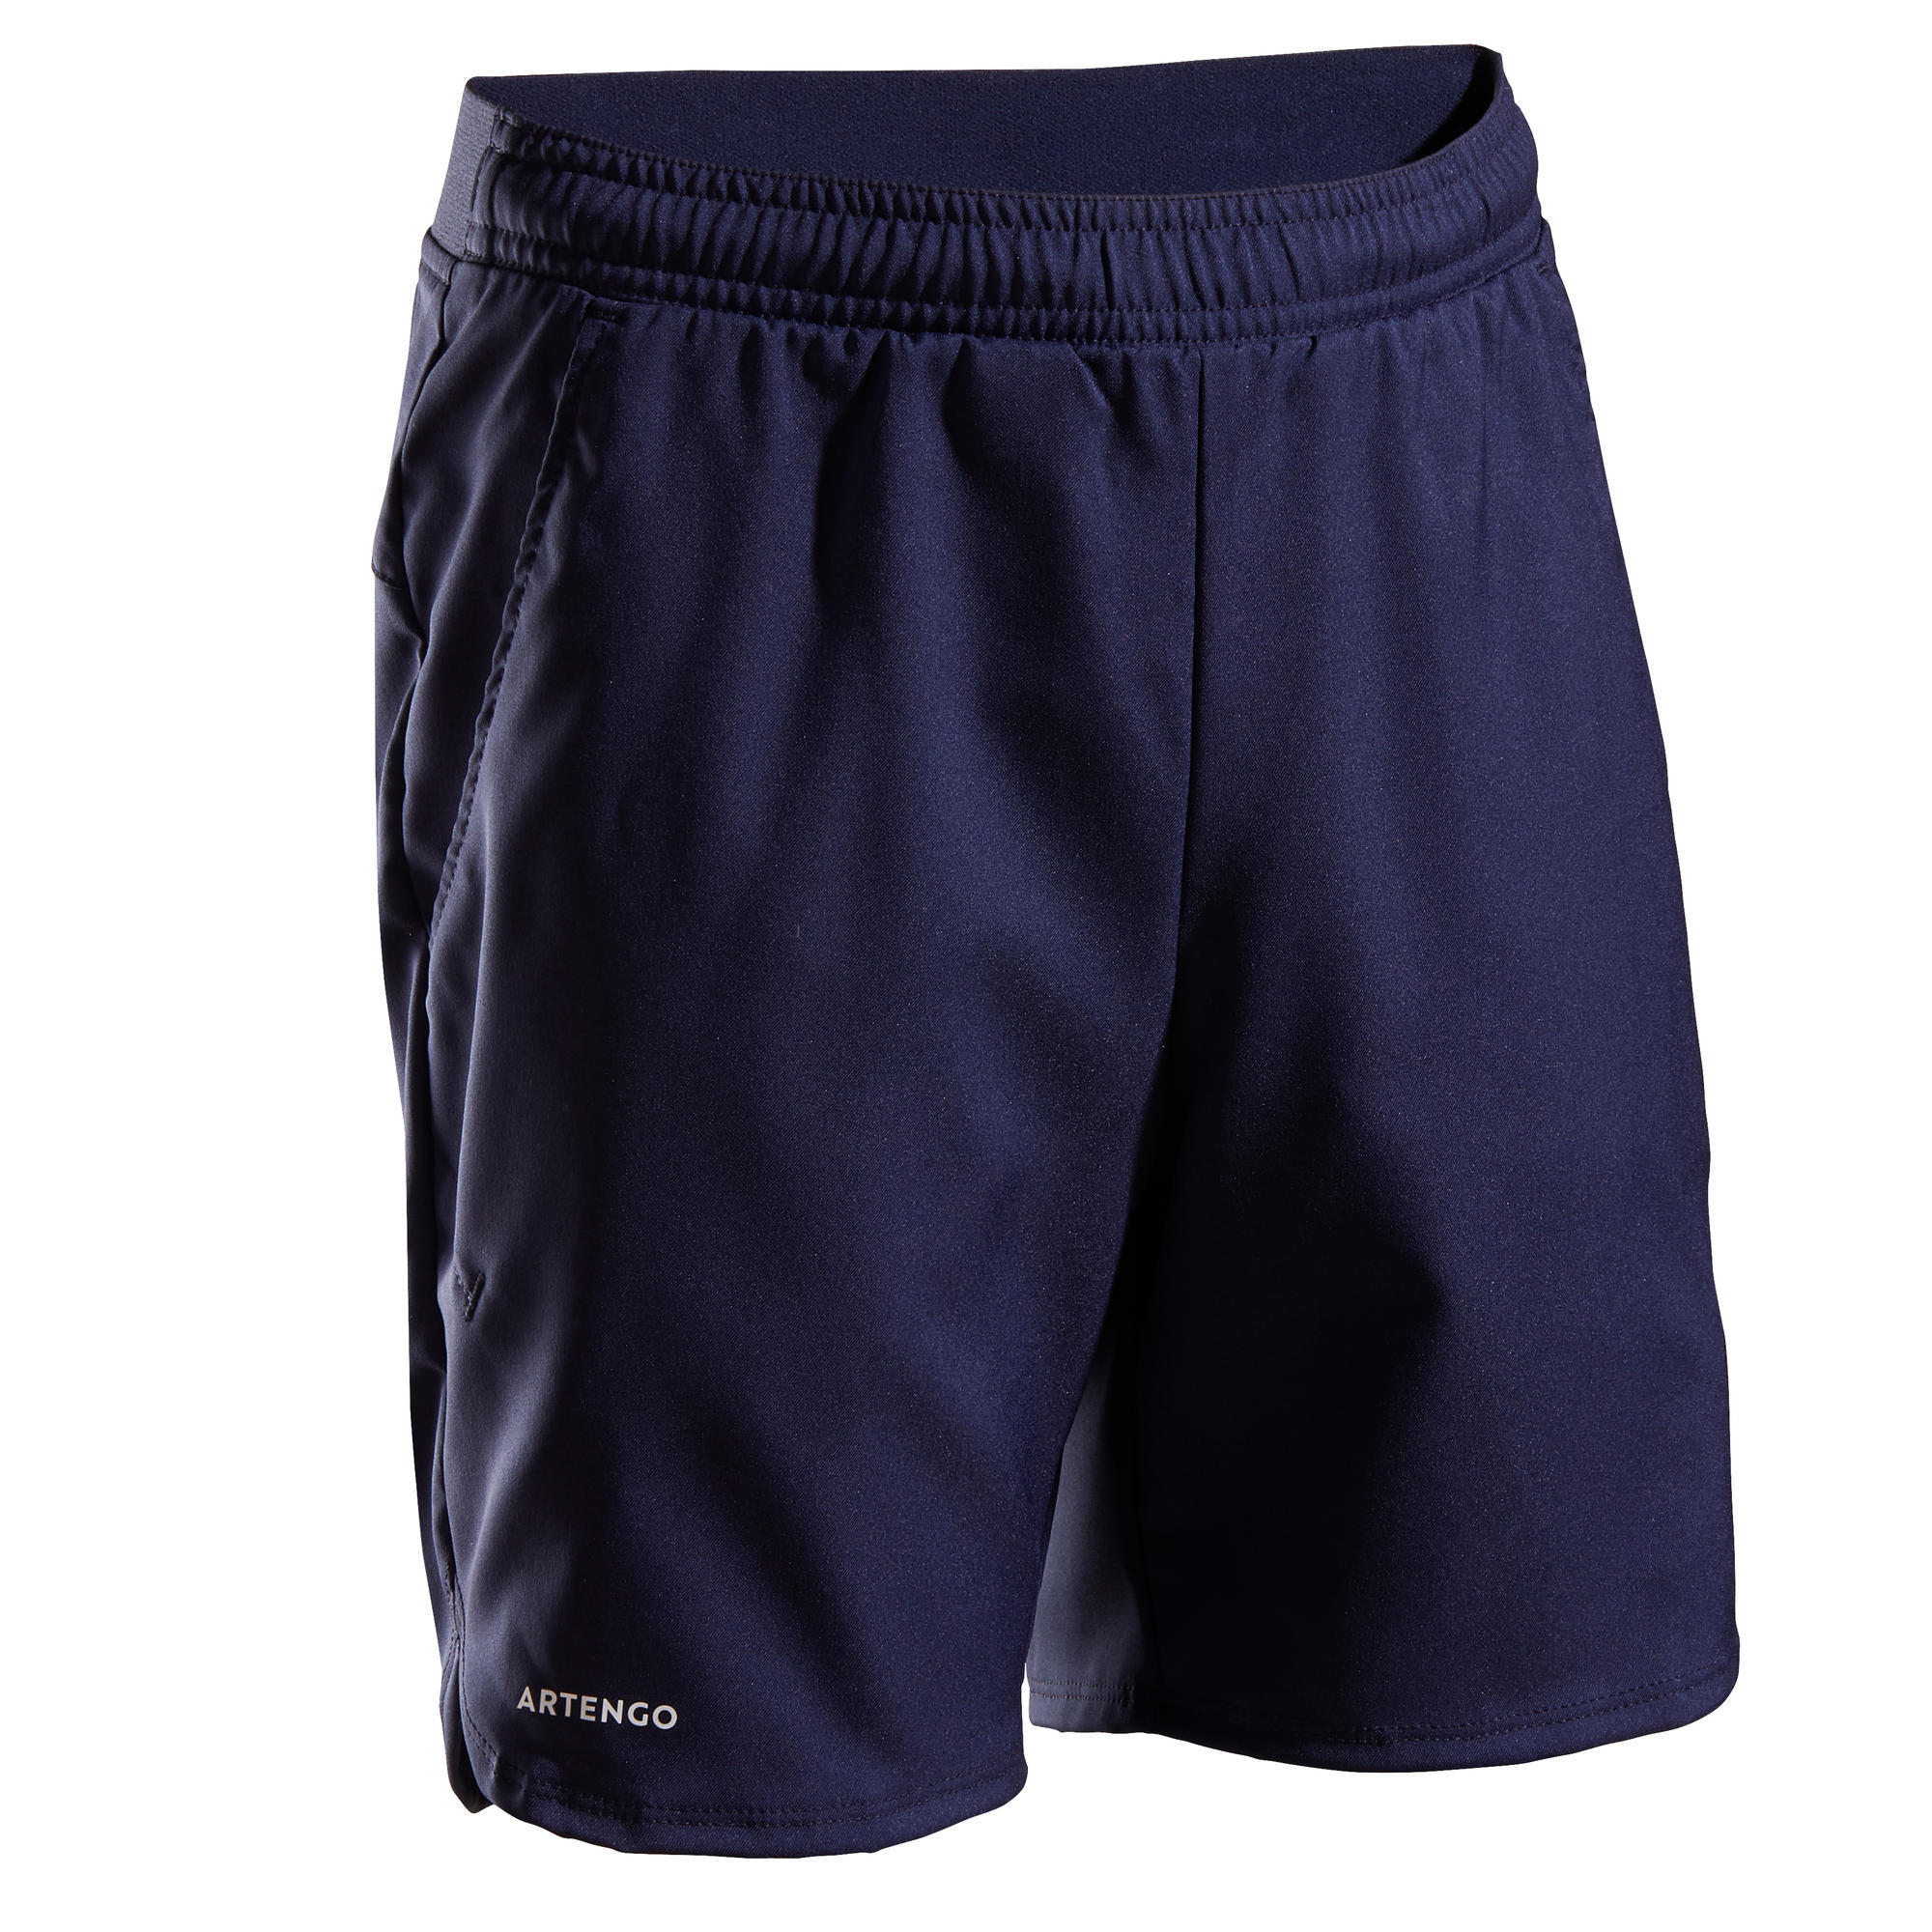 artengo shorts